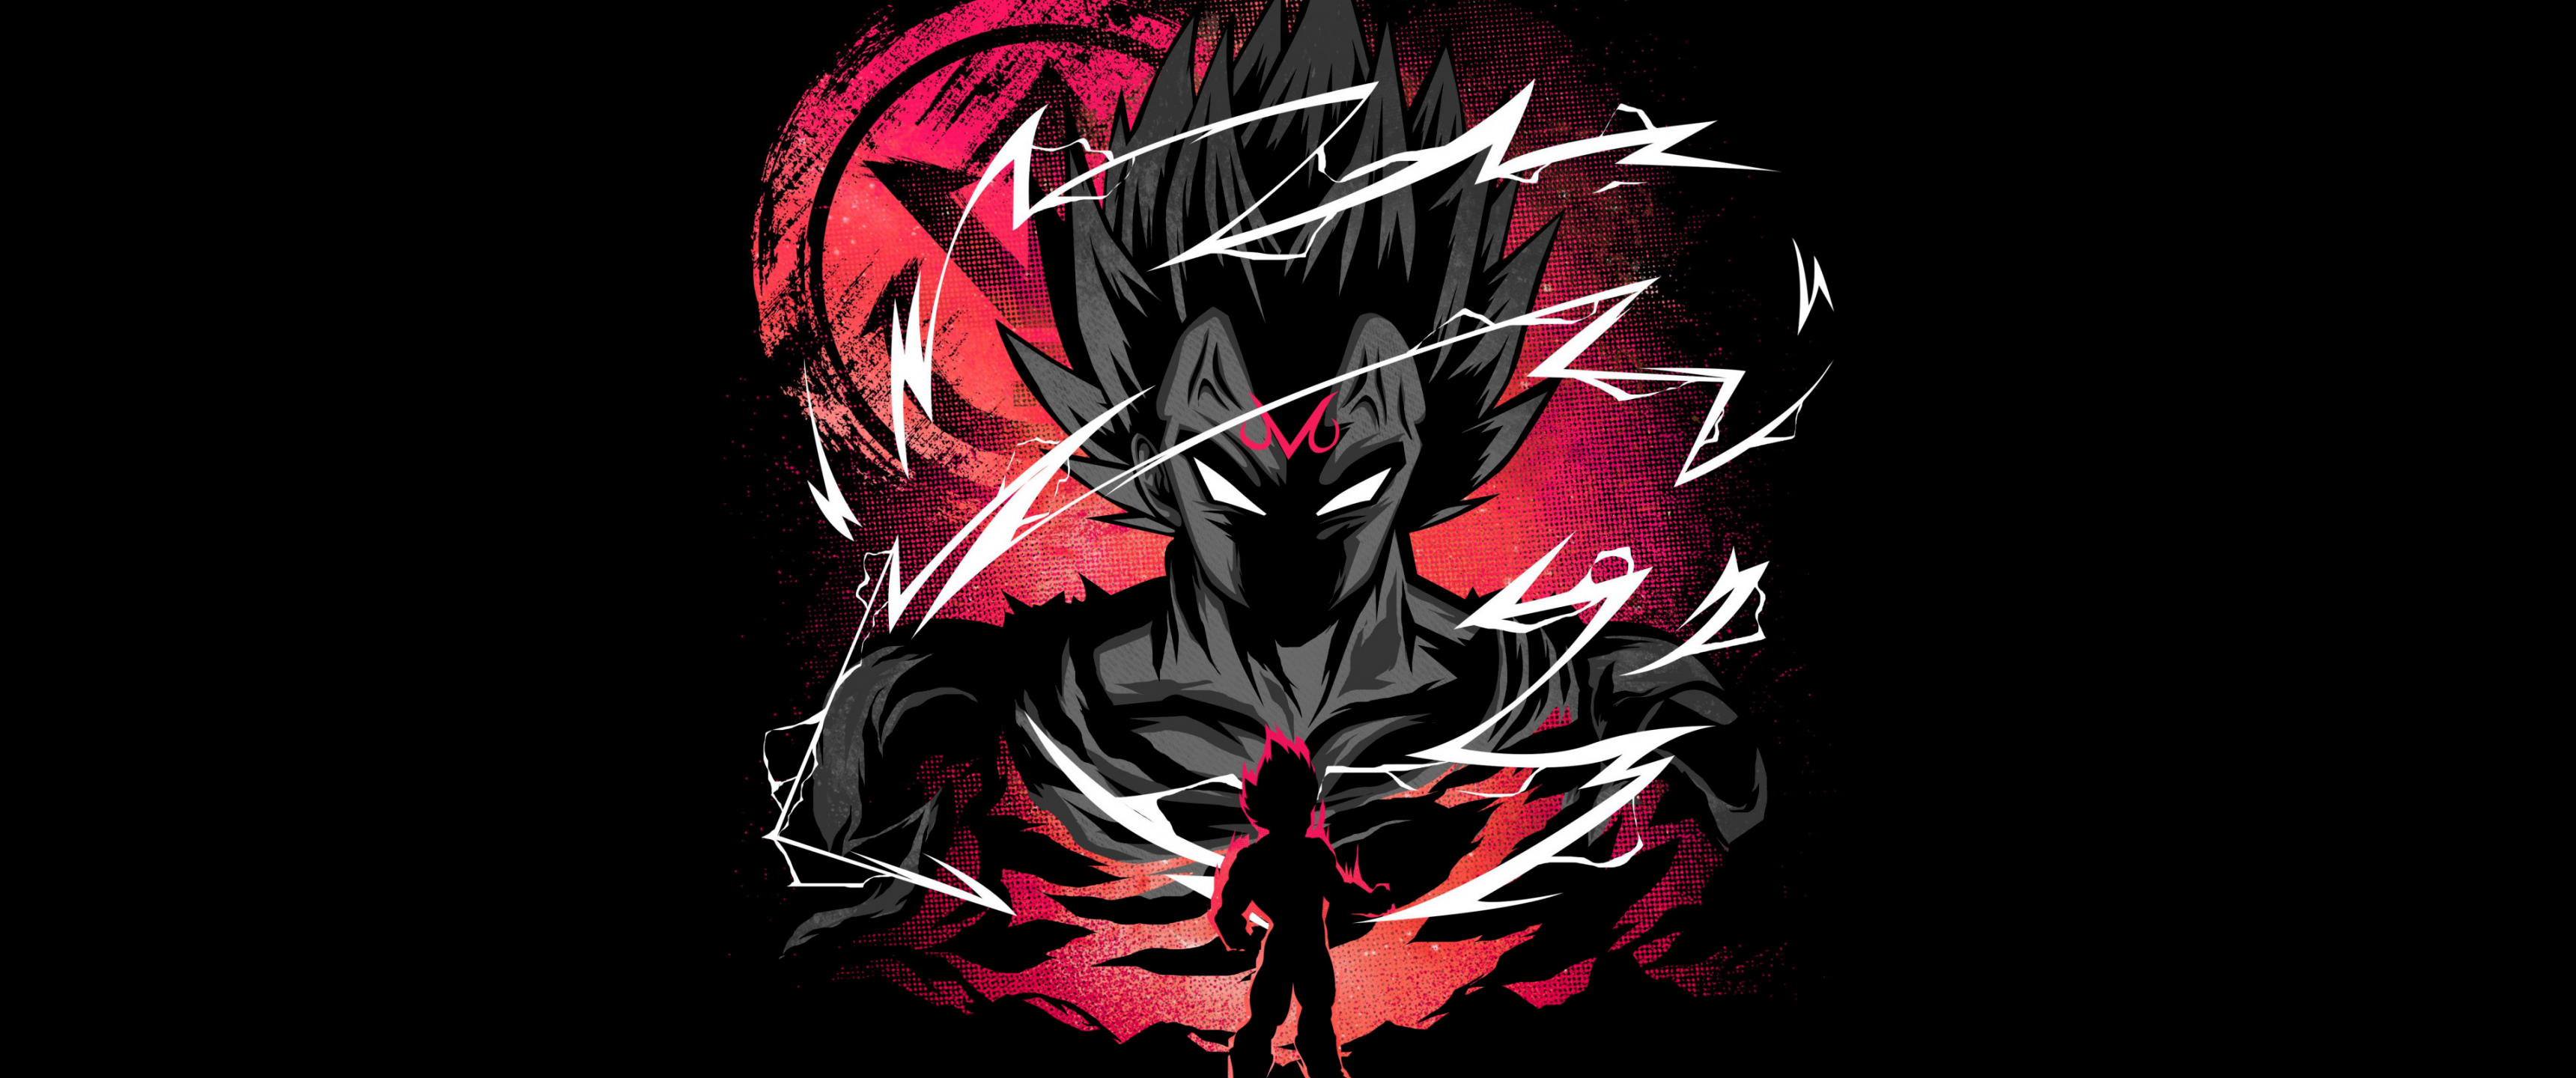 Vegeta Wallpaper 4K, Dragon Ball Super, Black background, Anime